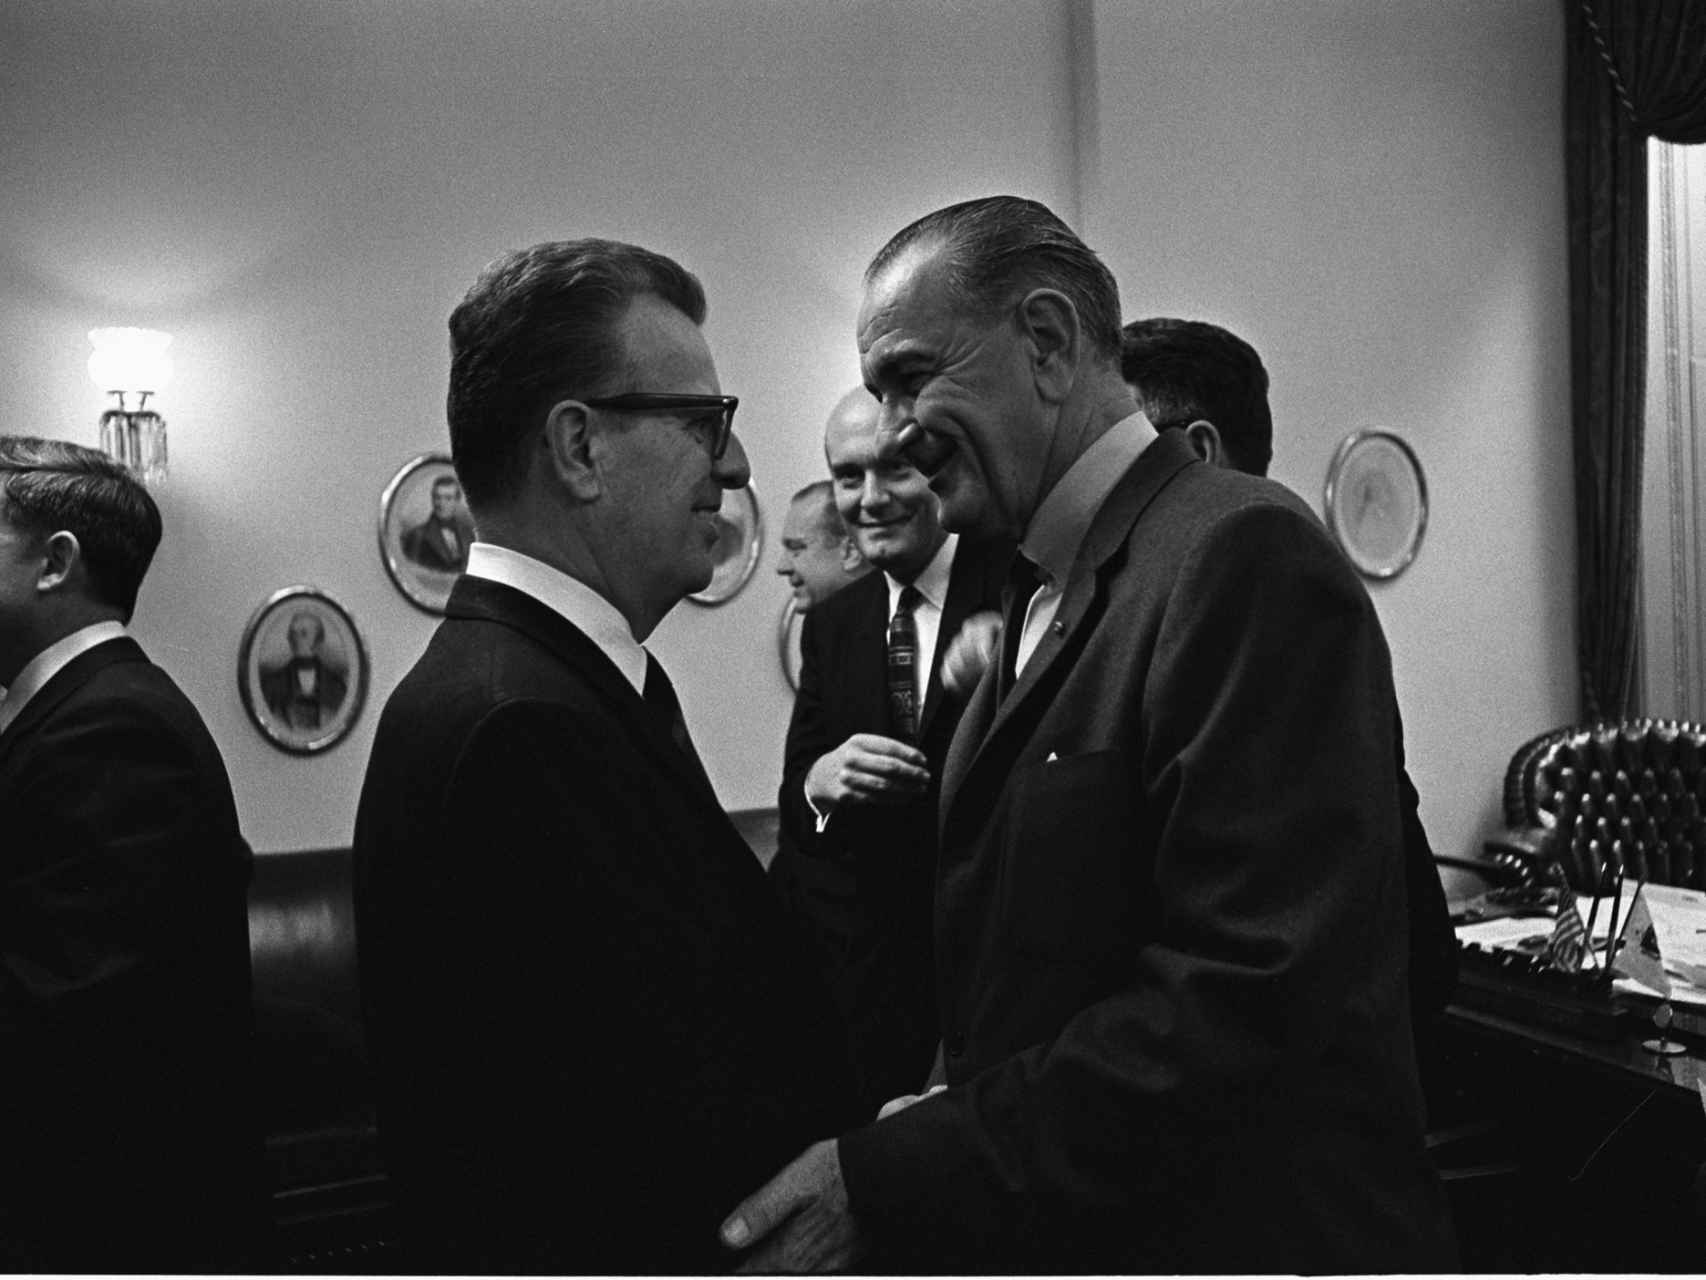 Larry con el presidente Johnson.